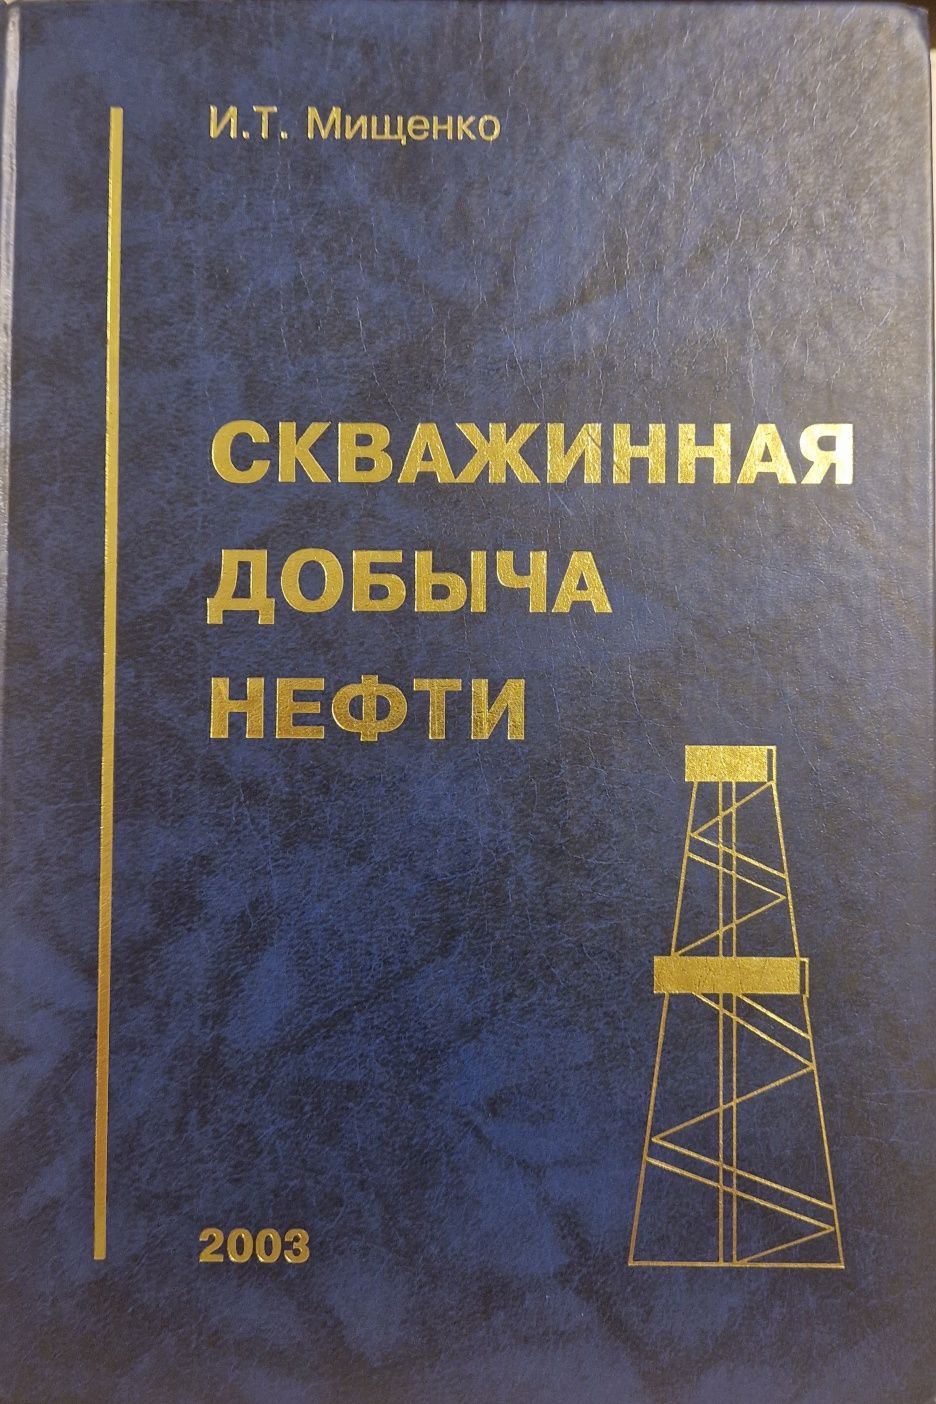 Техническая литература по нефтегазу